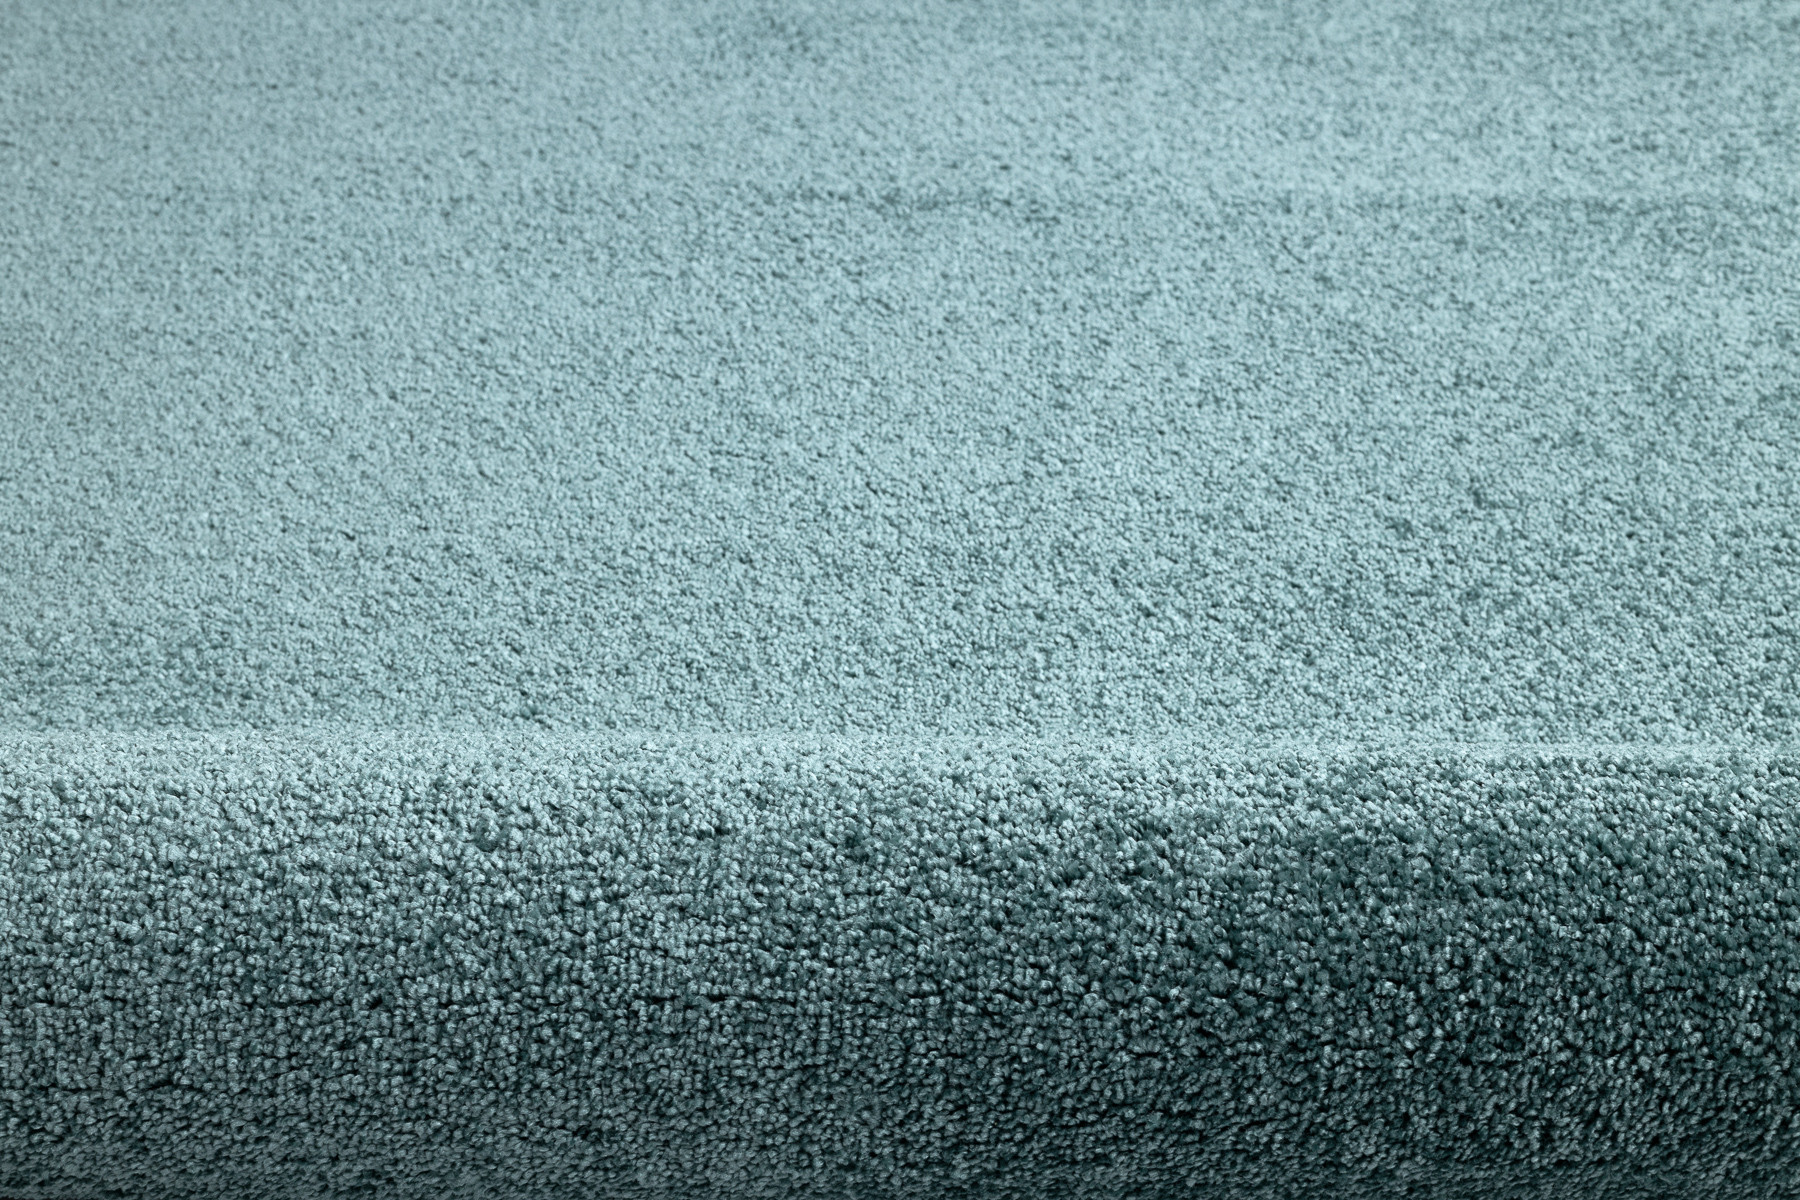 Metrážny koberec SANTA FE 24 zelený